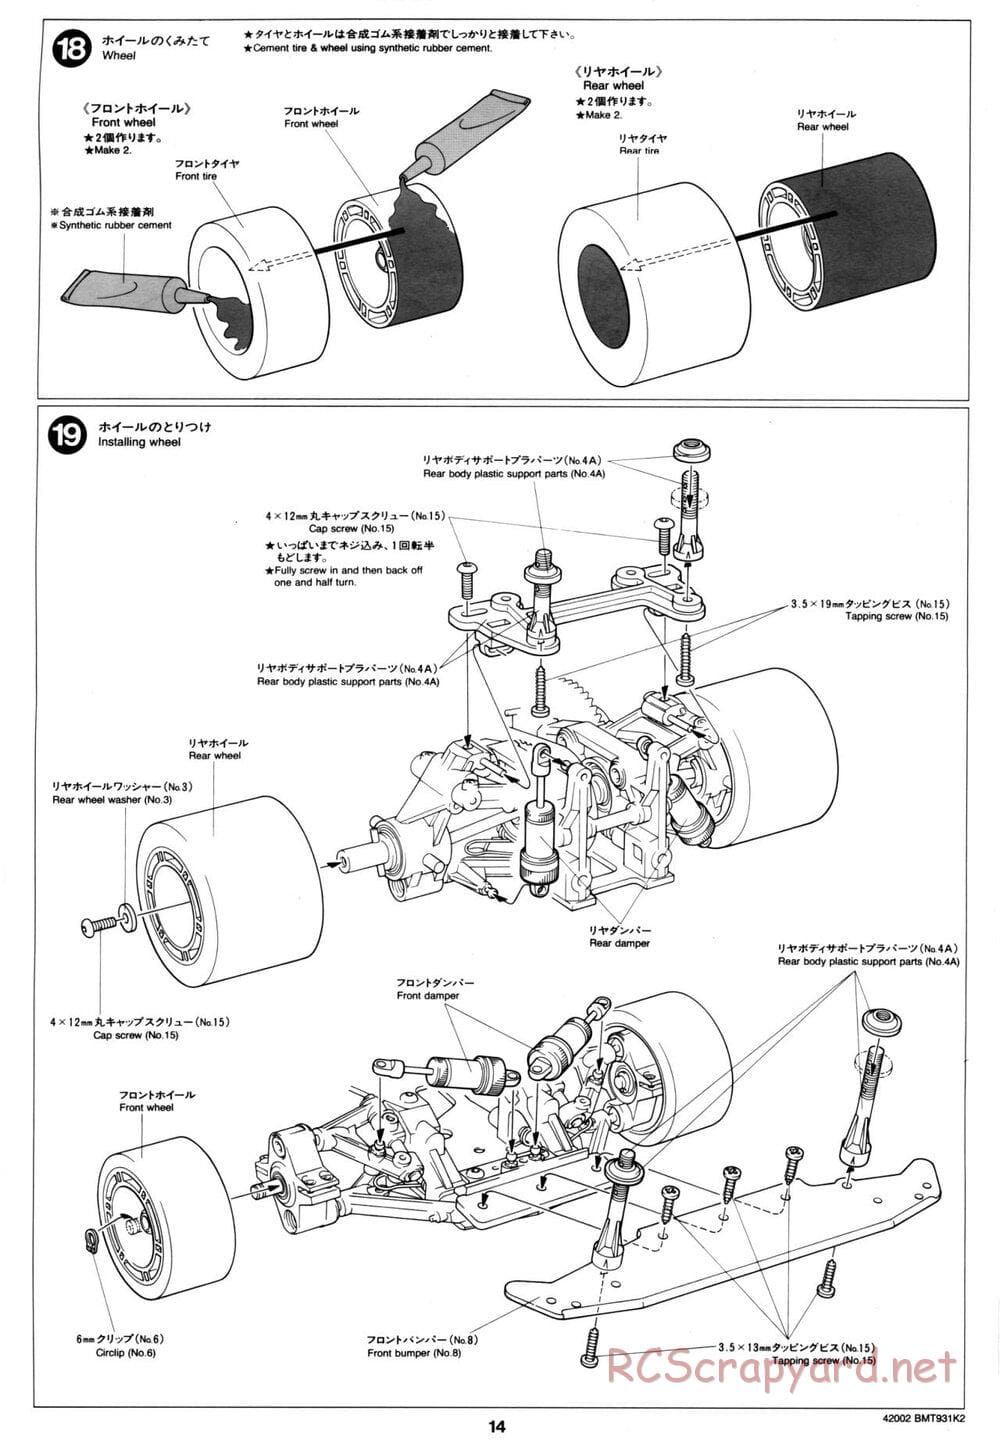 Tamiya - BMT 931 K2 Racing Chassis - Manual - Page 14